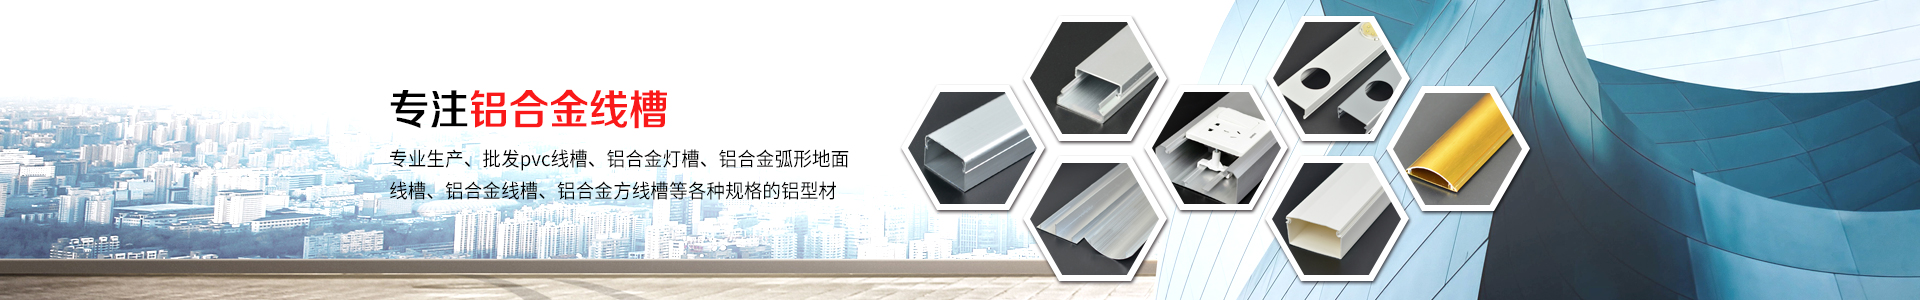 30×20圆铝合金方线槽-江阴市鸣诚铝业有限公司